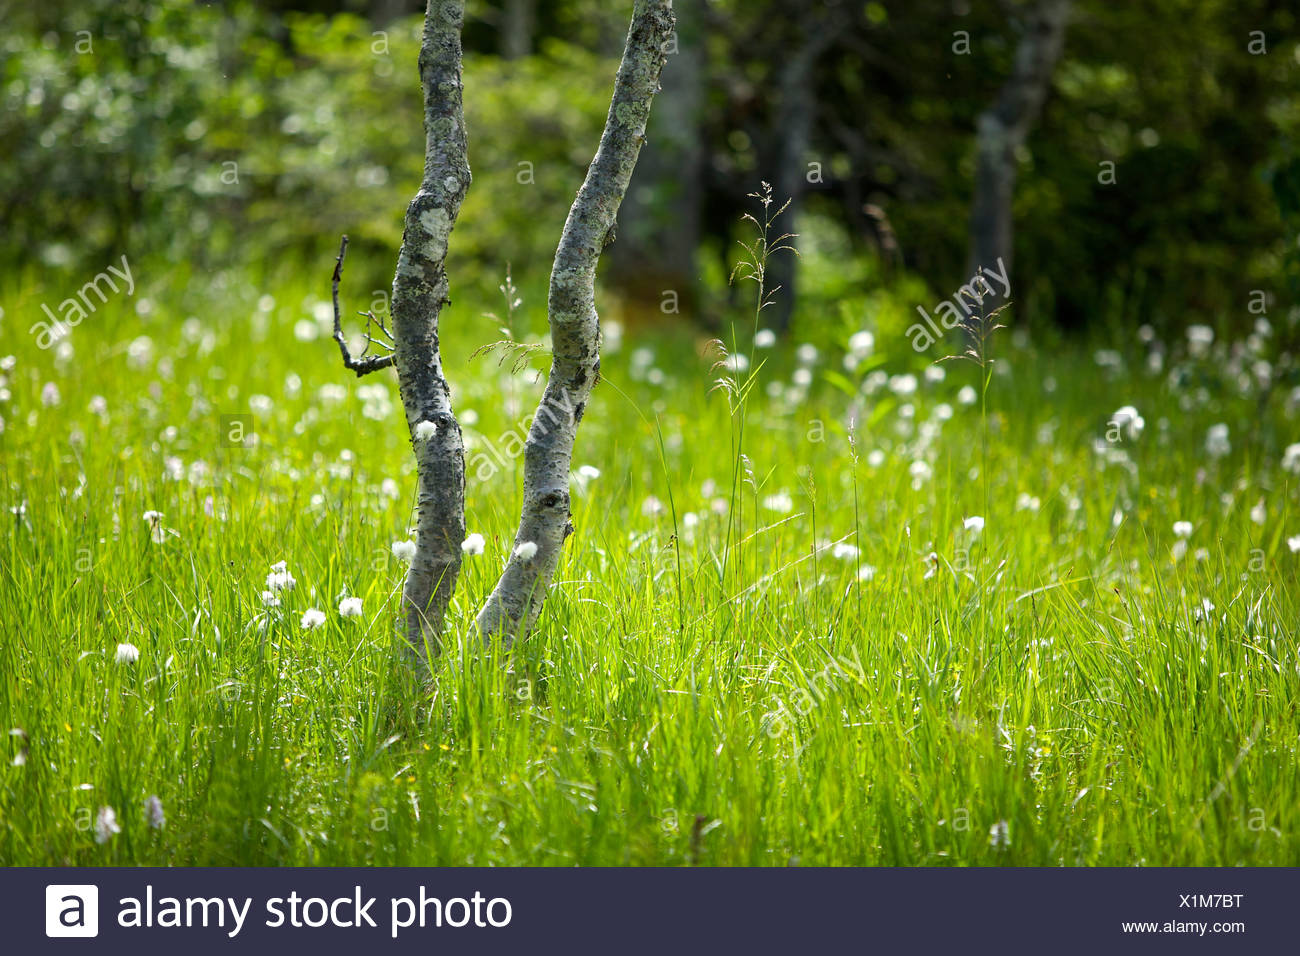 Abedules De Montana En Medio De Hermosos Paisajes Y Jardines Prado Fotografia De Stock Alamy